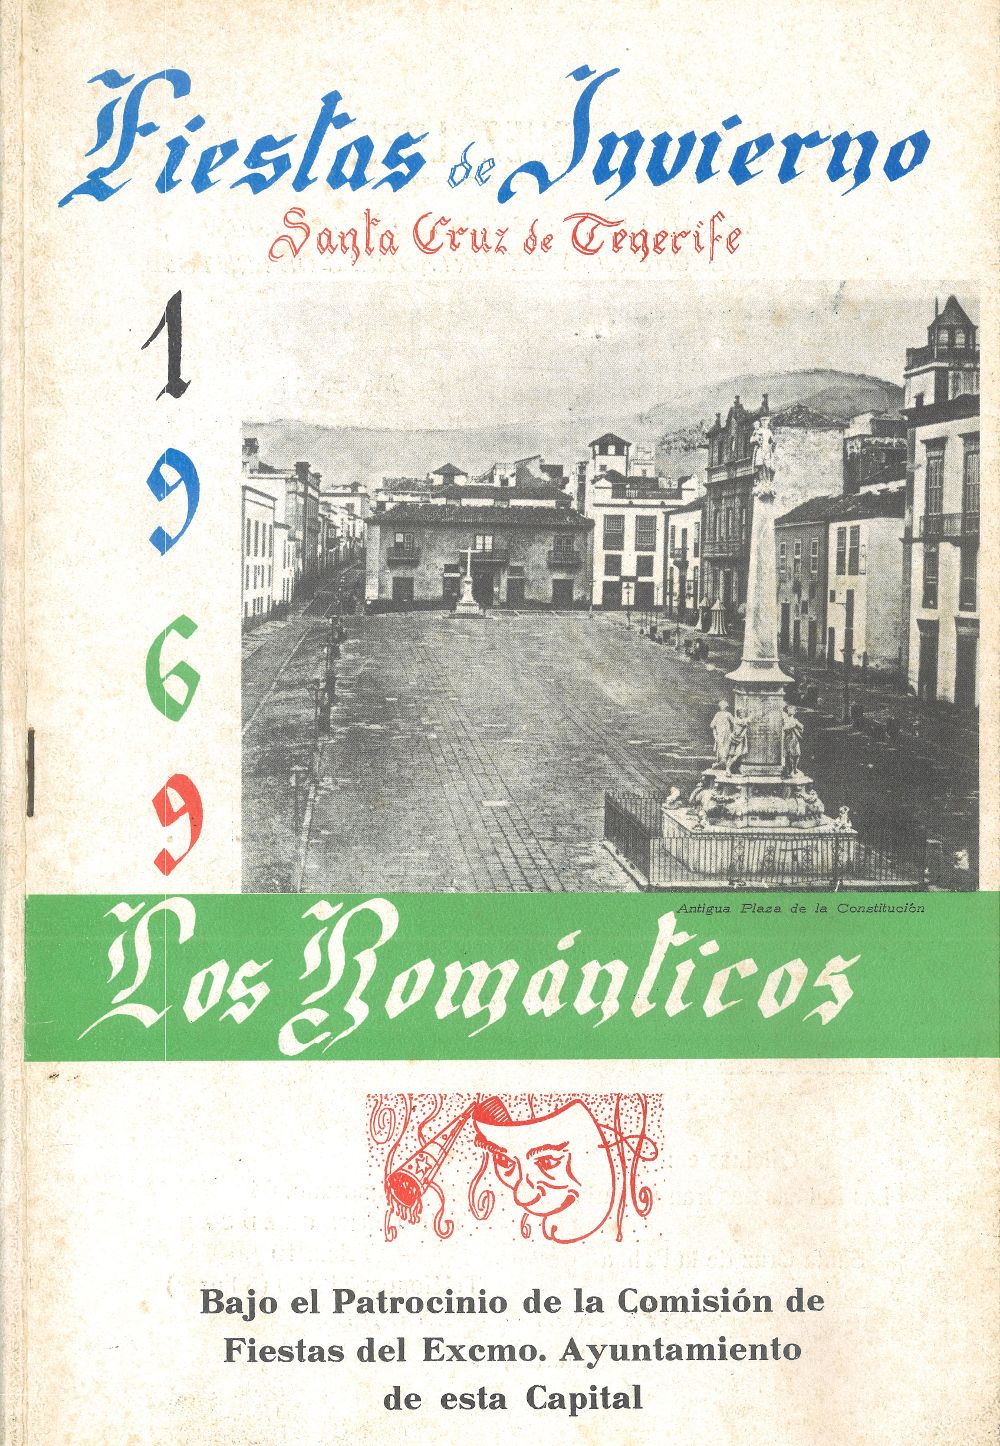 Programa de mano de Los Románticos de 1969.